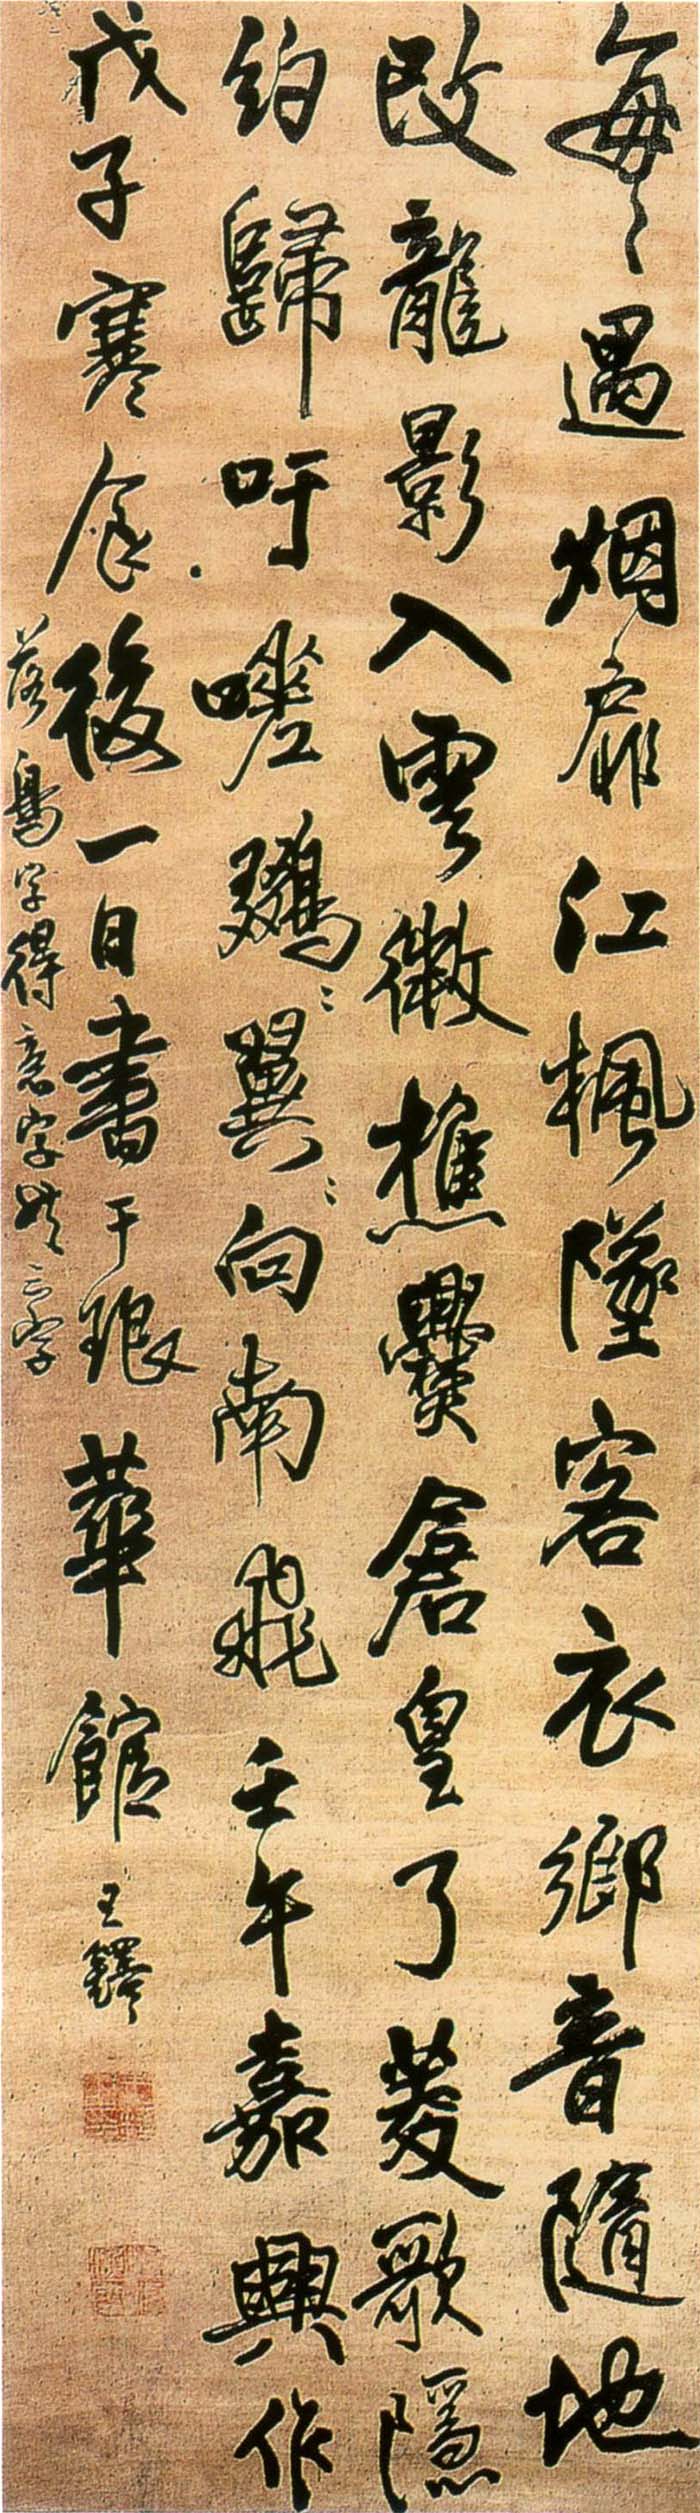 王铎《行书嘉兴作诗轴》-北京故宫博物院藏(图1)